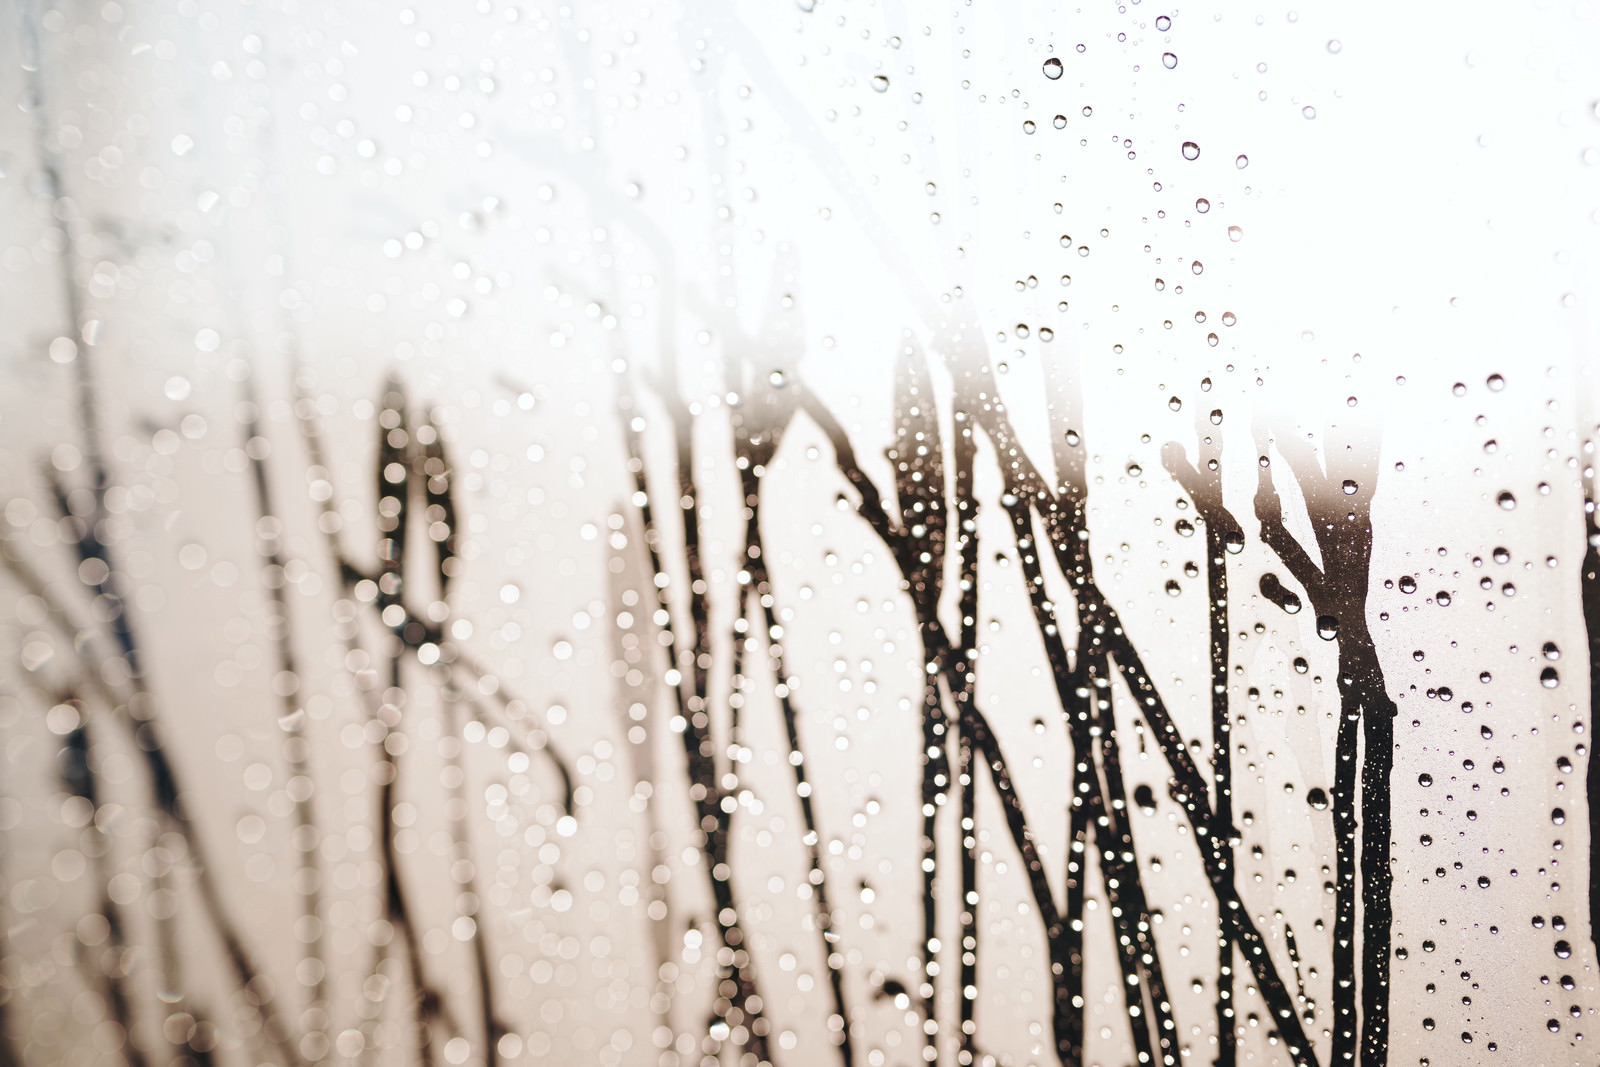 「雲った窓に滴る水滴」の写真